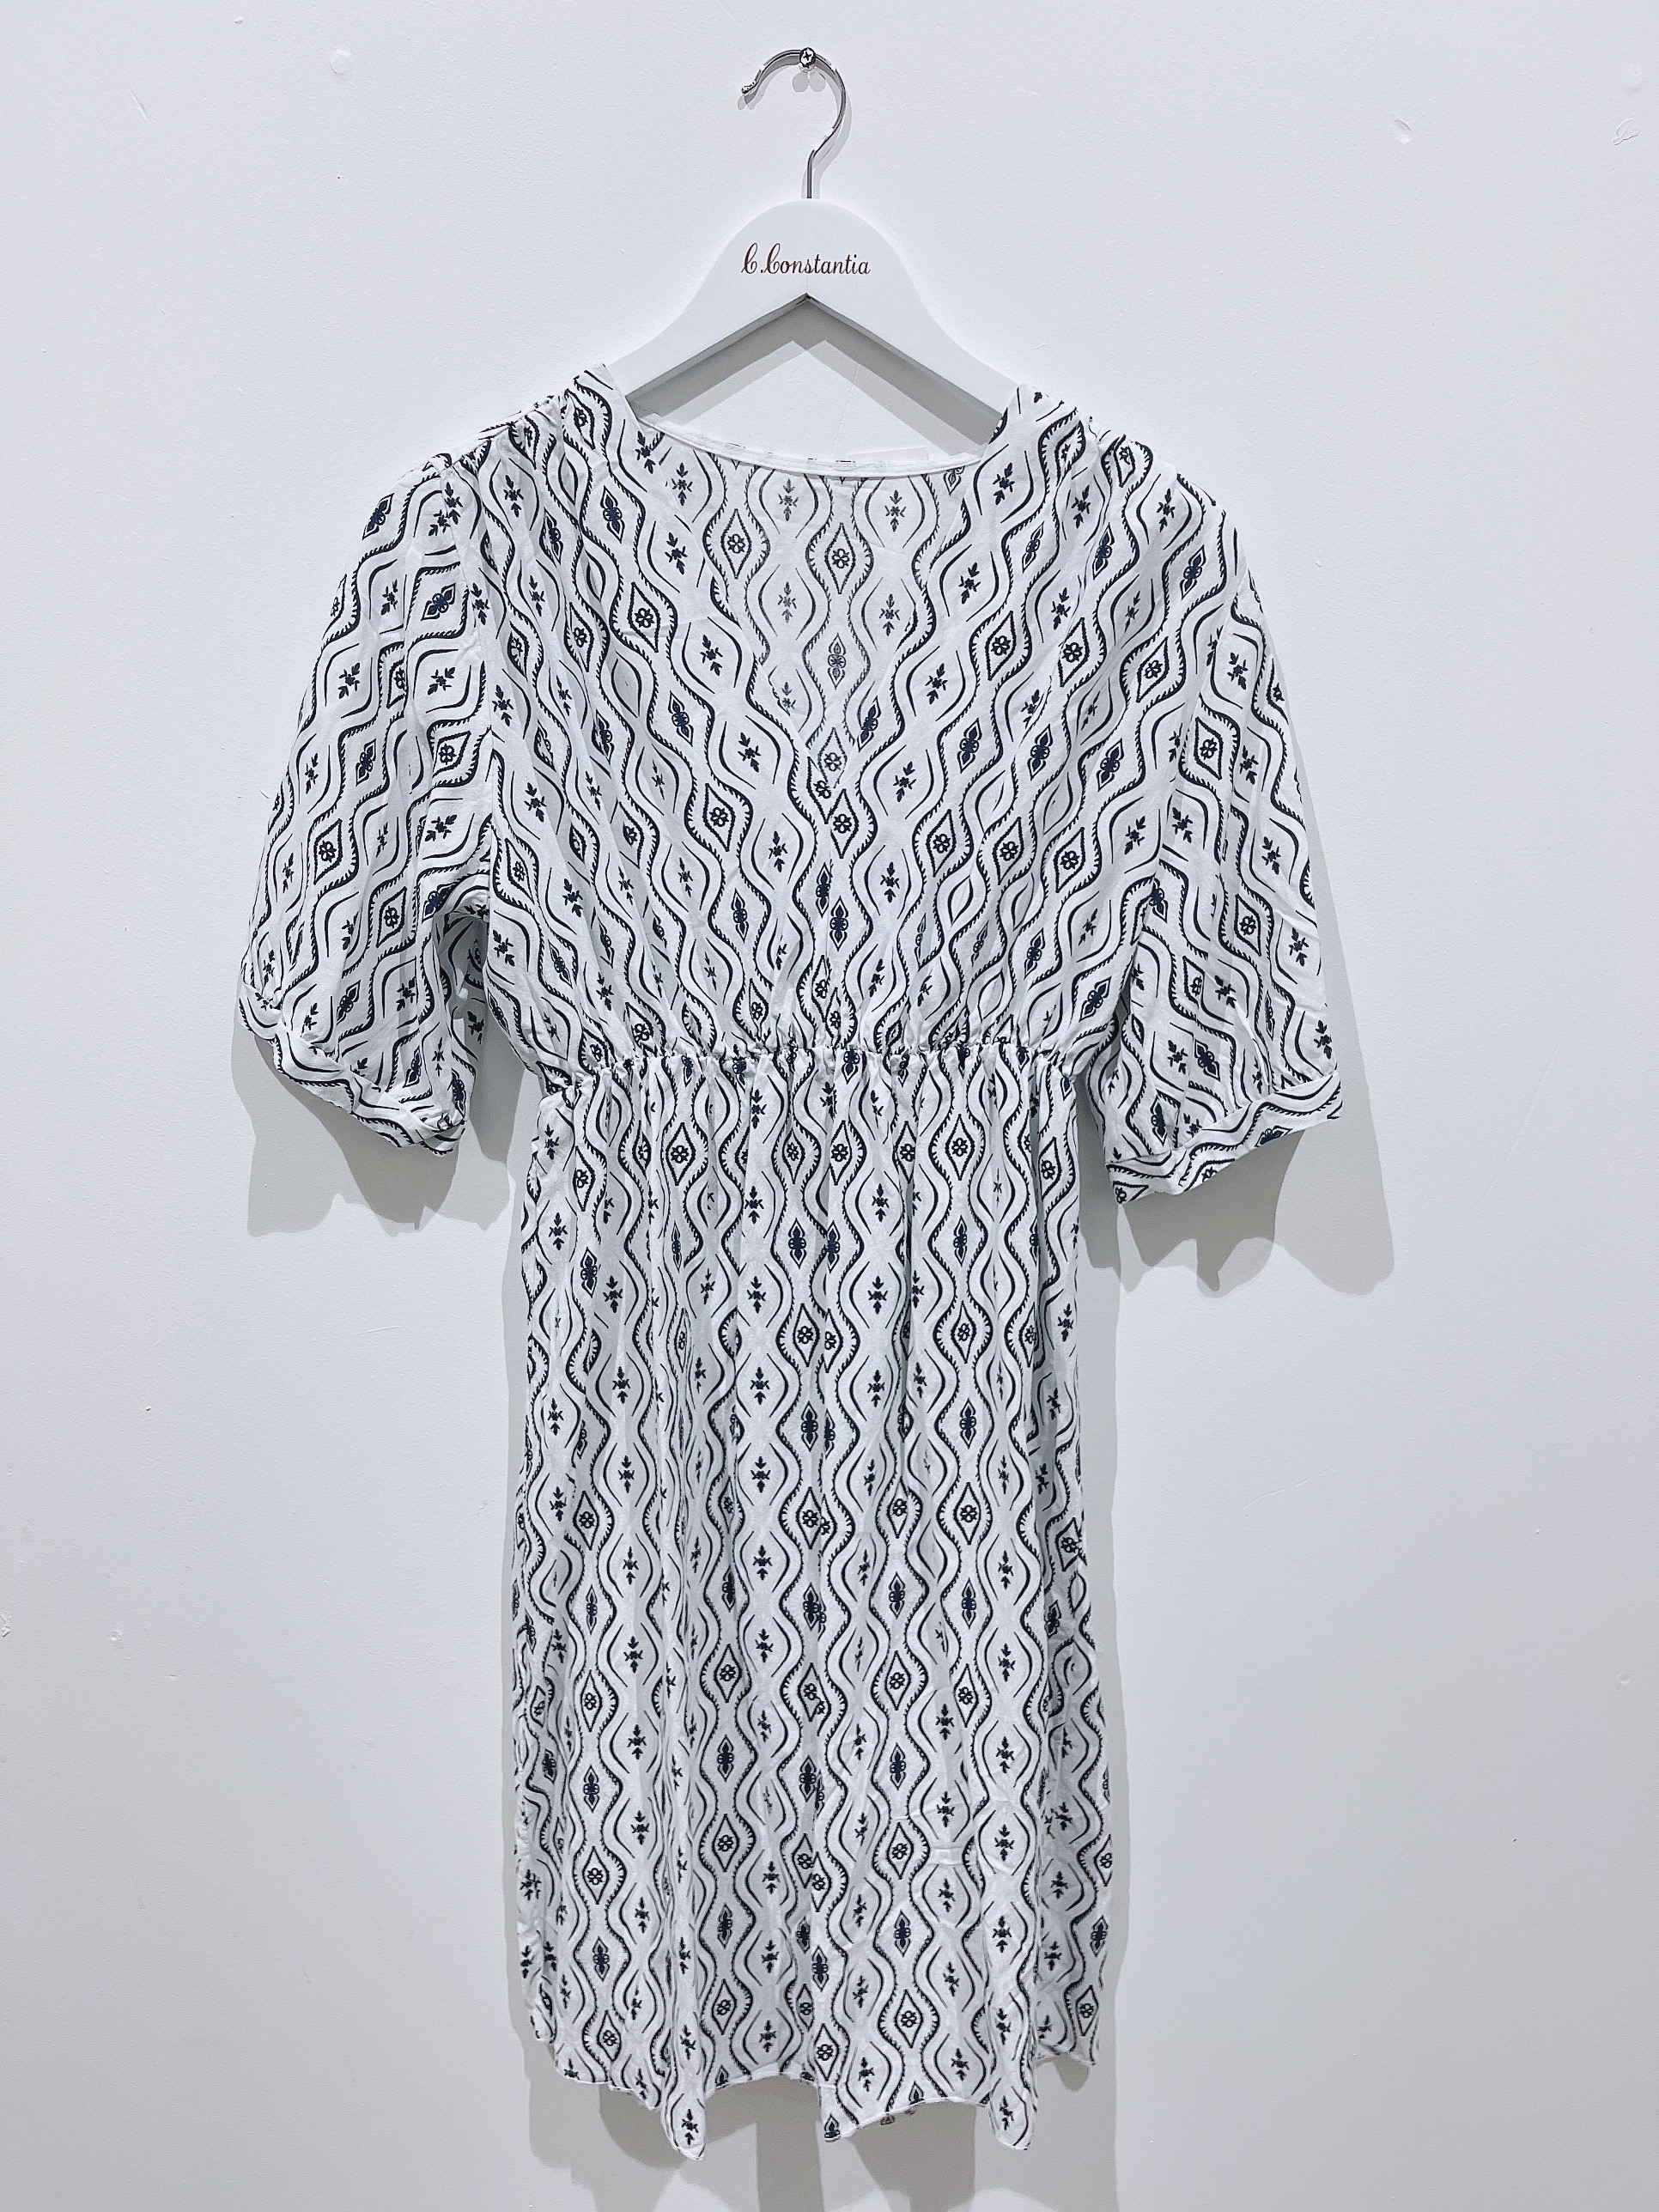 Robes mi-longues Femme Blanc C.Constantia 1386 #c Efashion Paris